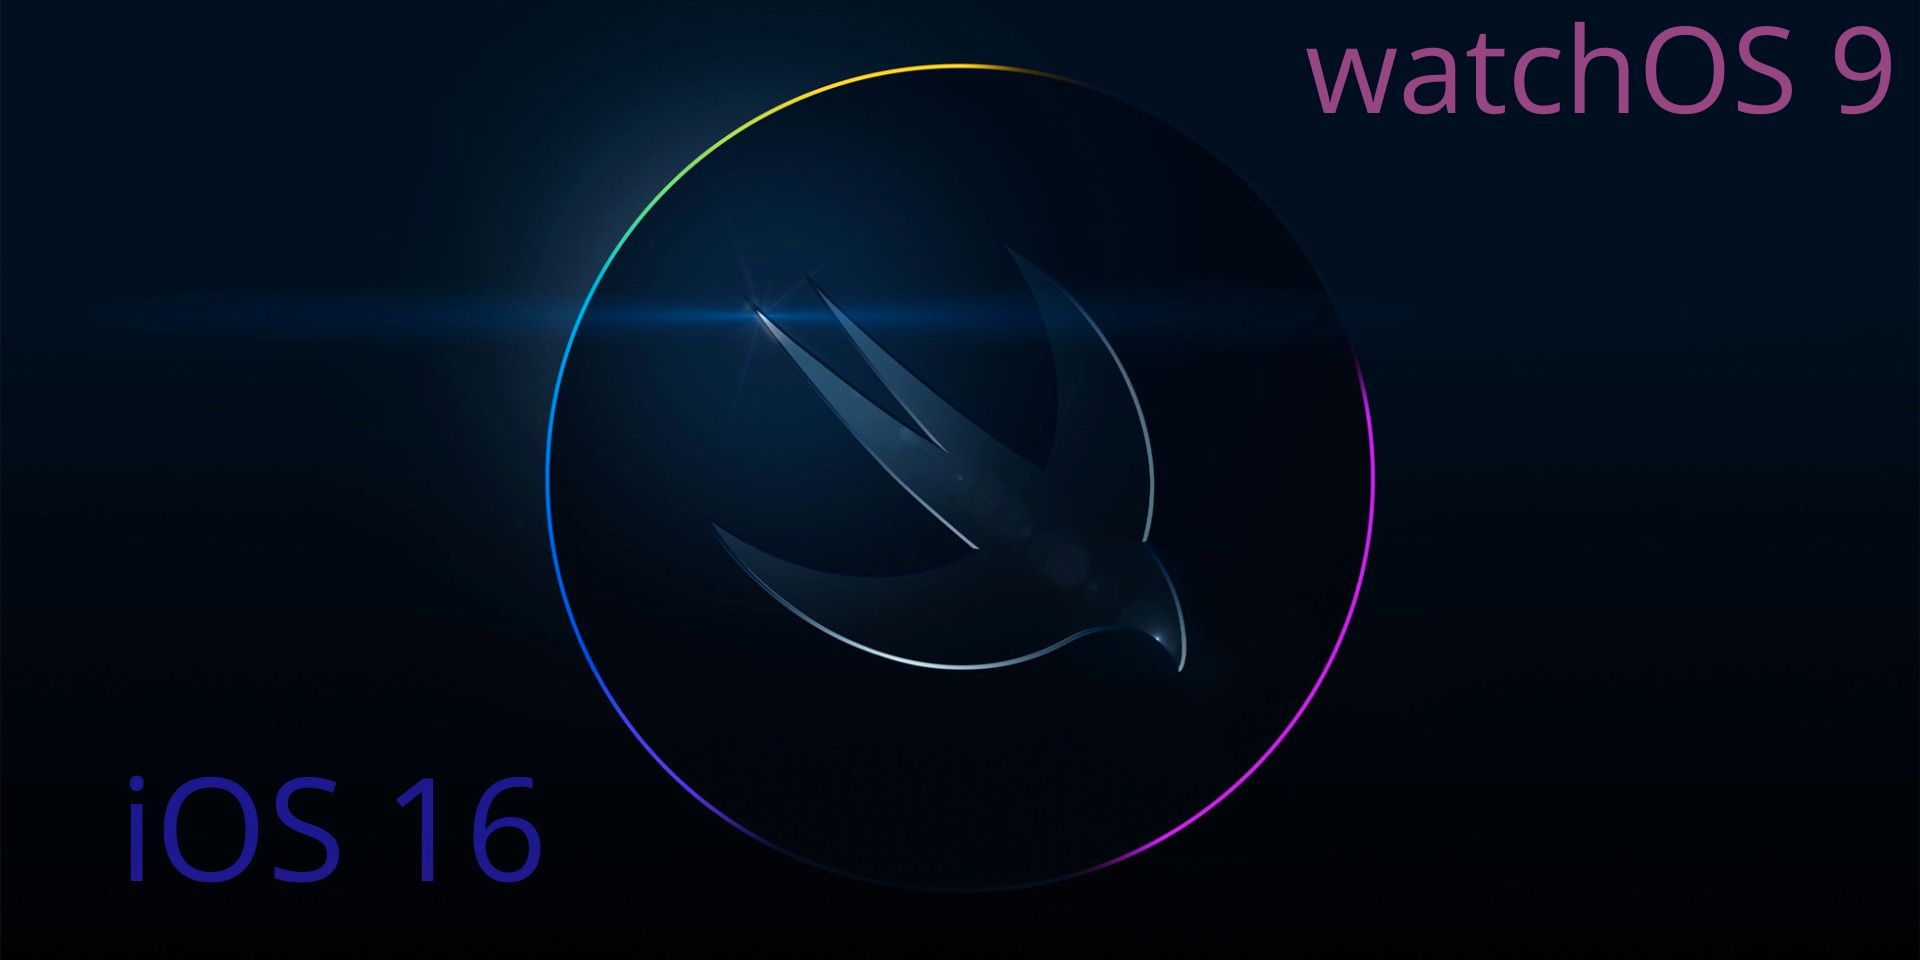 Se espera que Apple anuncie actualizaciones importantes para iOS 16 y watchOS 9 en la WWDC